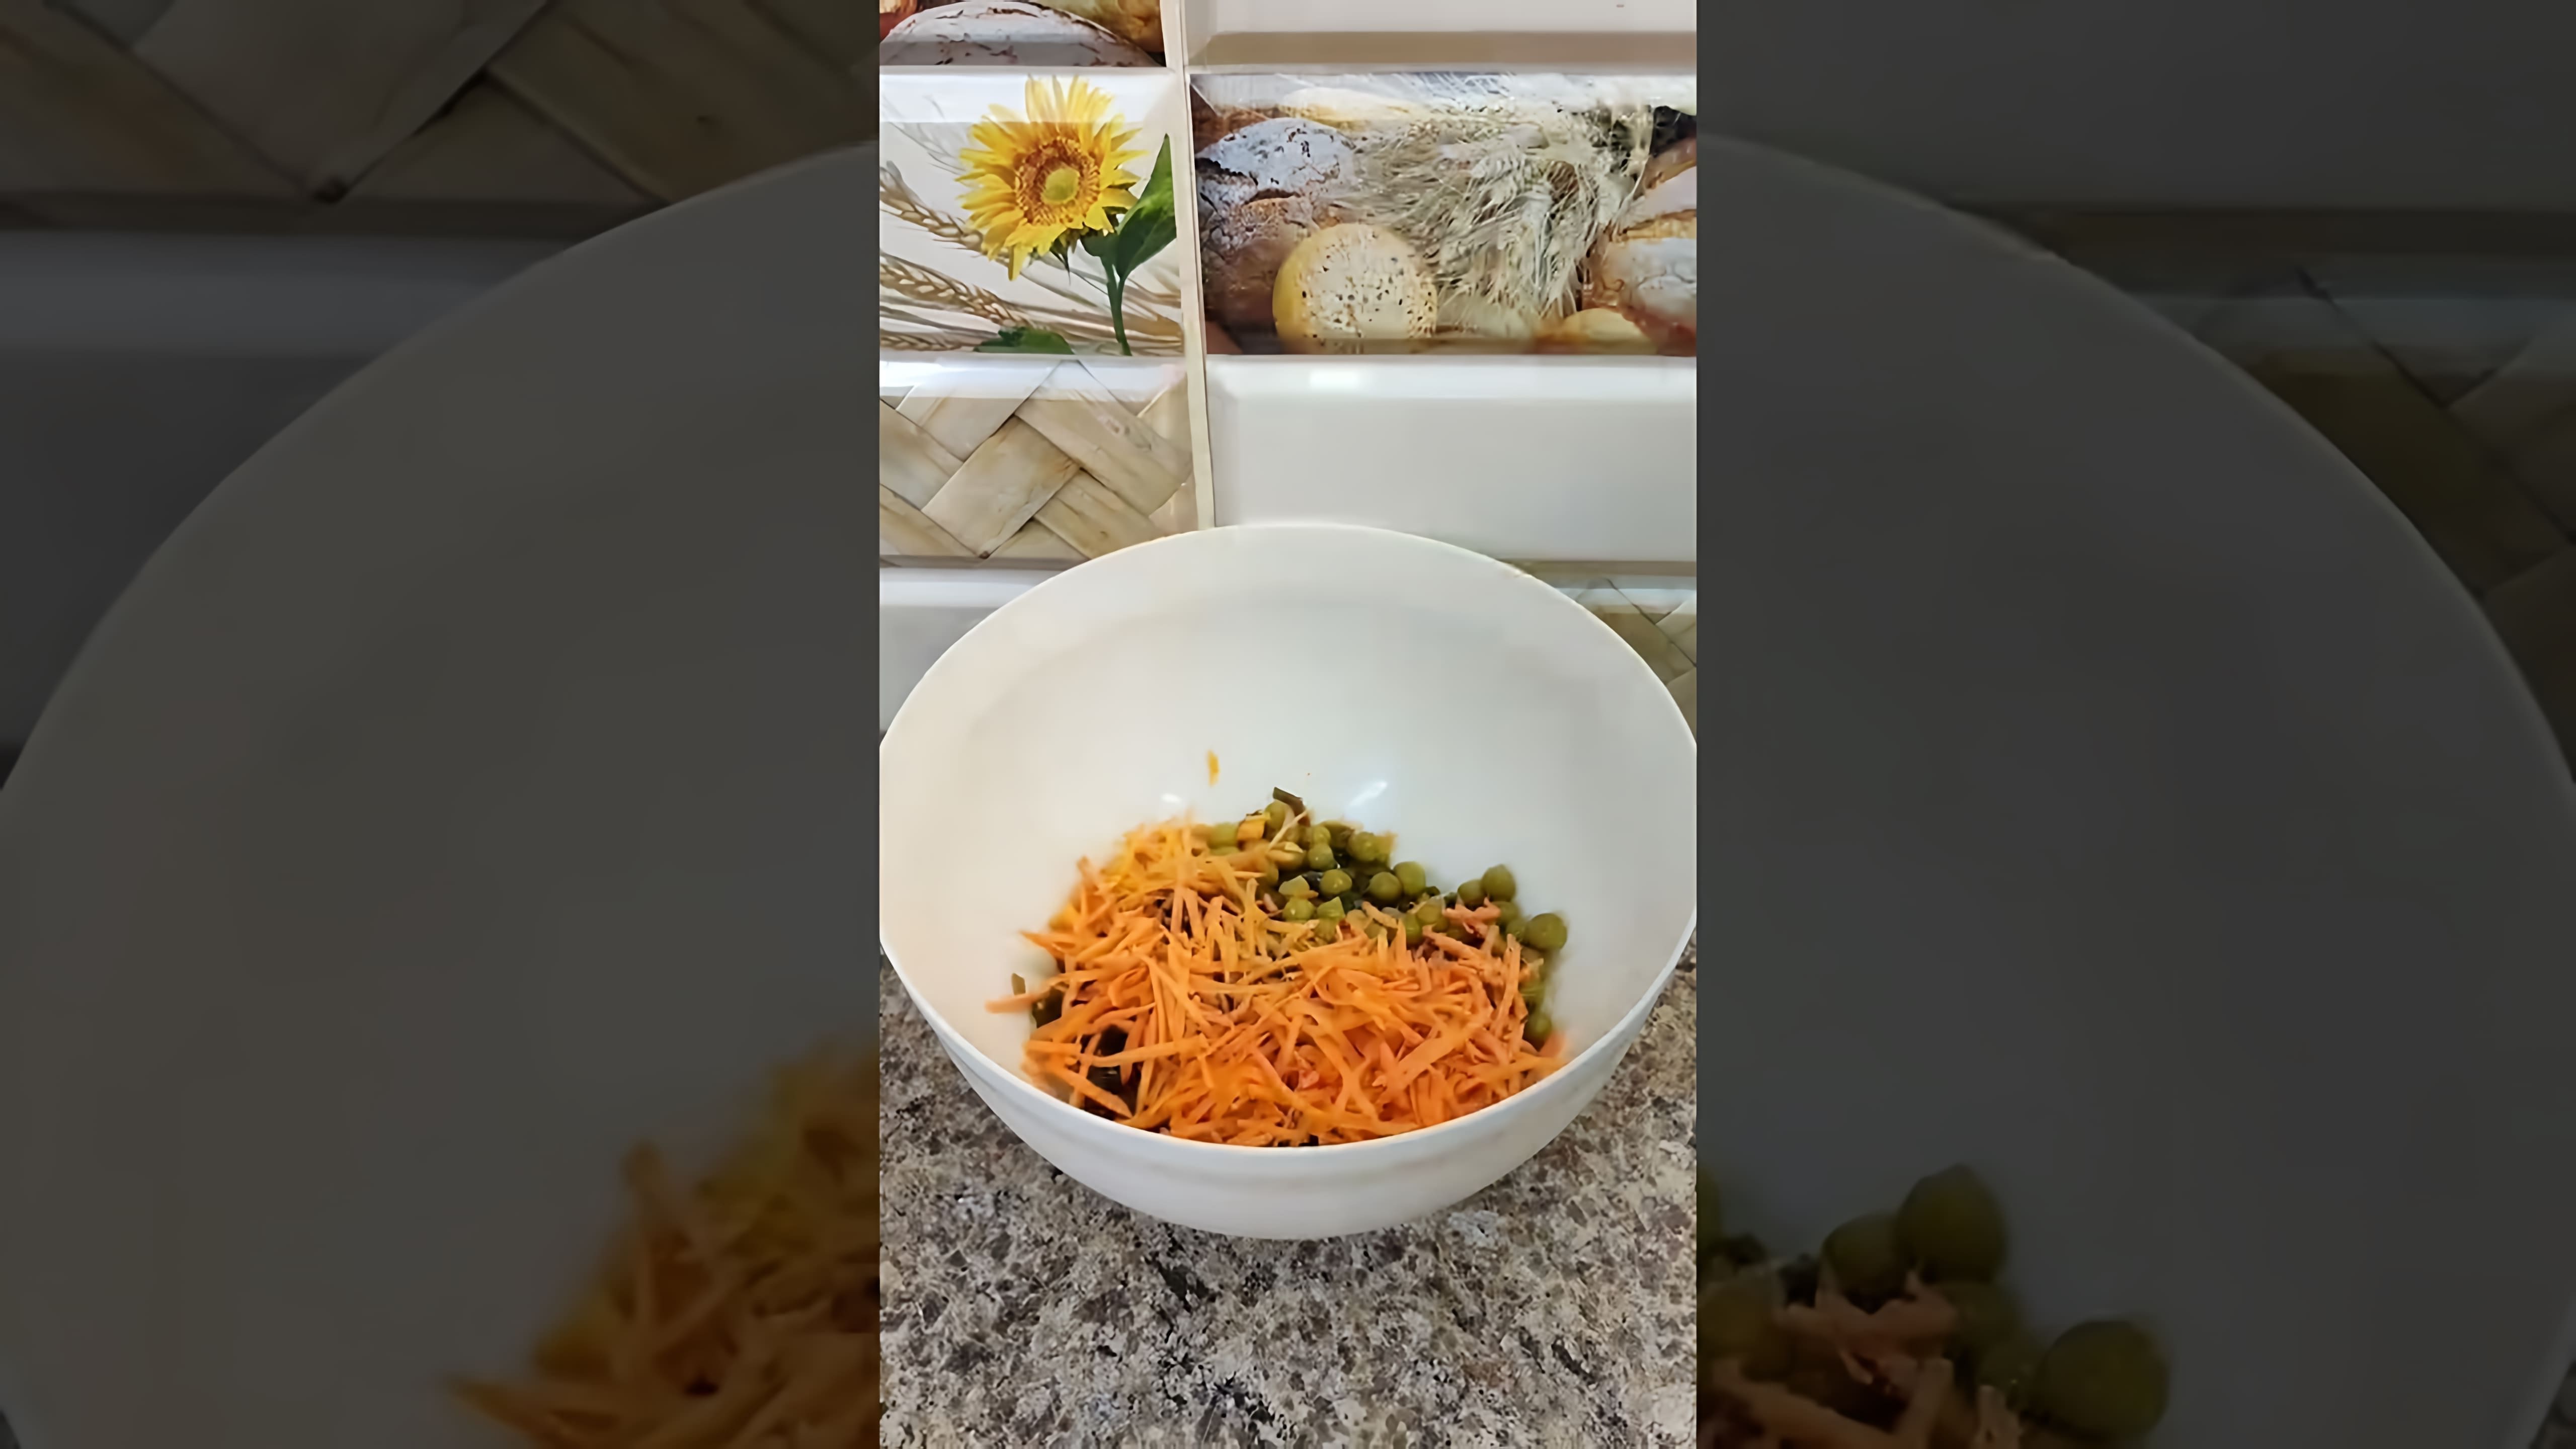 В этом видео демонстрируется рецепт салата с морской капустой, который можно приготовить на пять с плюсом